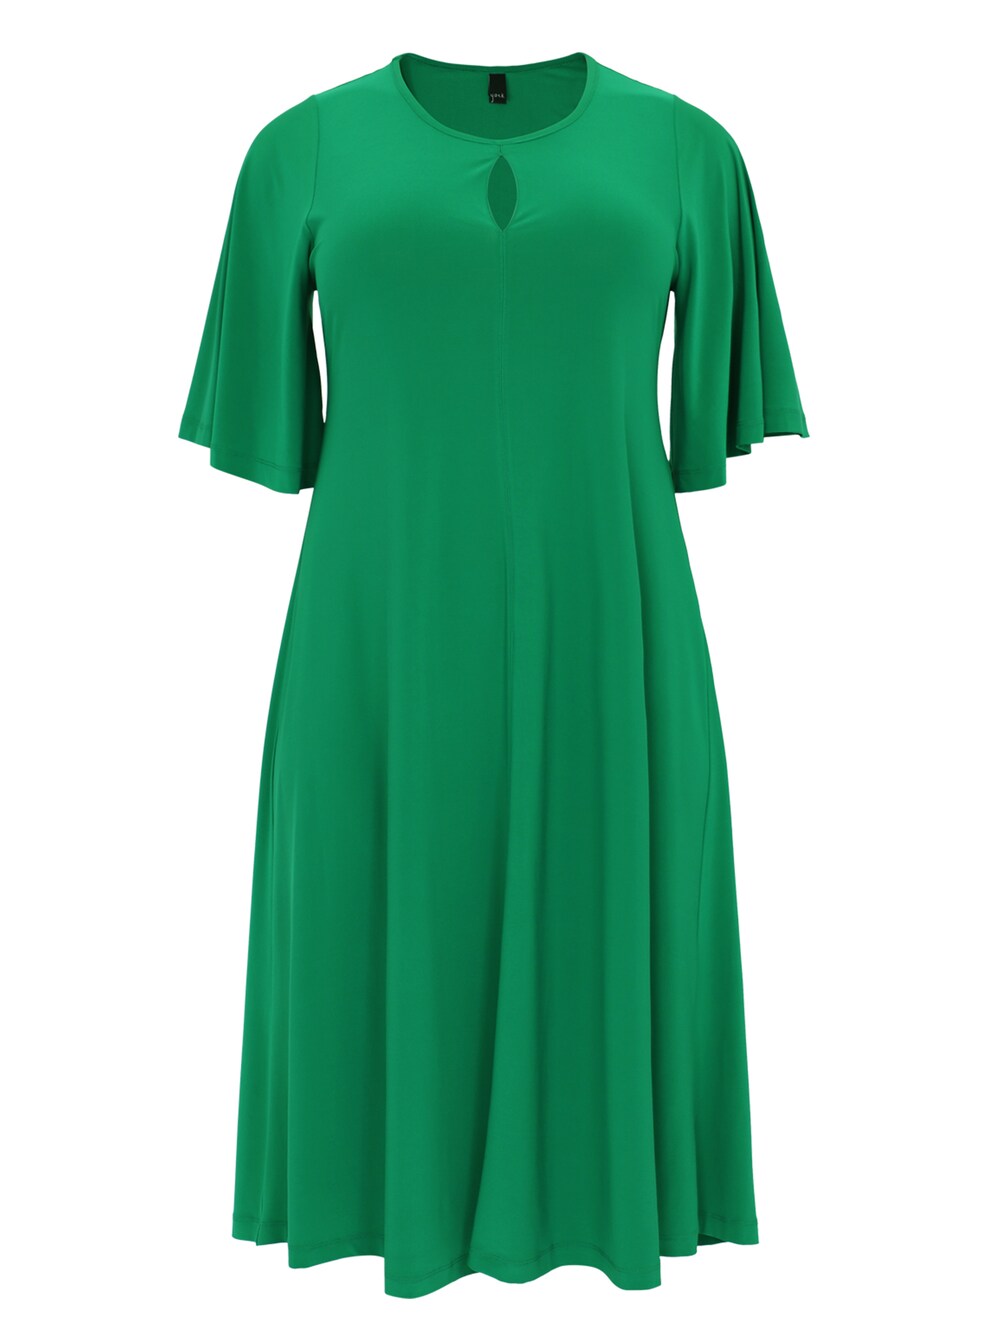 Платье Yoek, зеленый